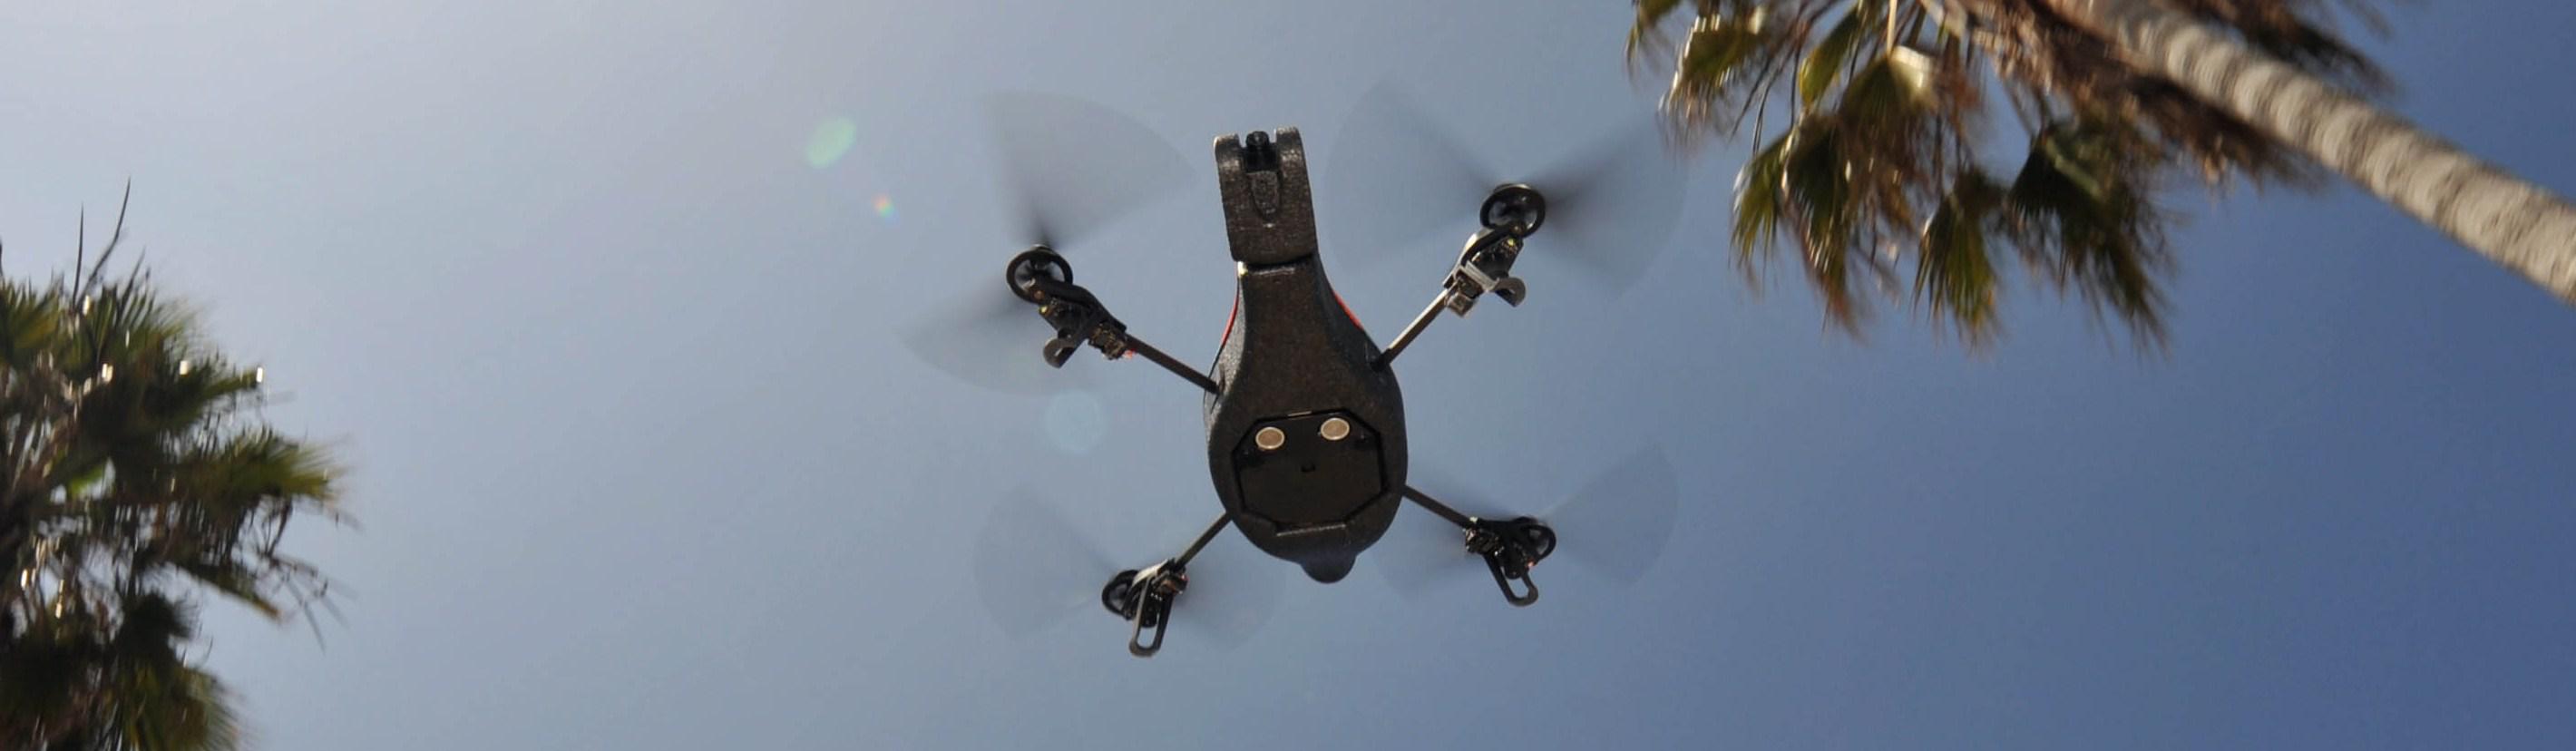 parrotdrone oosgame weebeetroc [actu iPhone] PARROT AR.Drone, pilotez un drone avec votre iPhone.